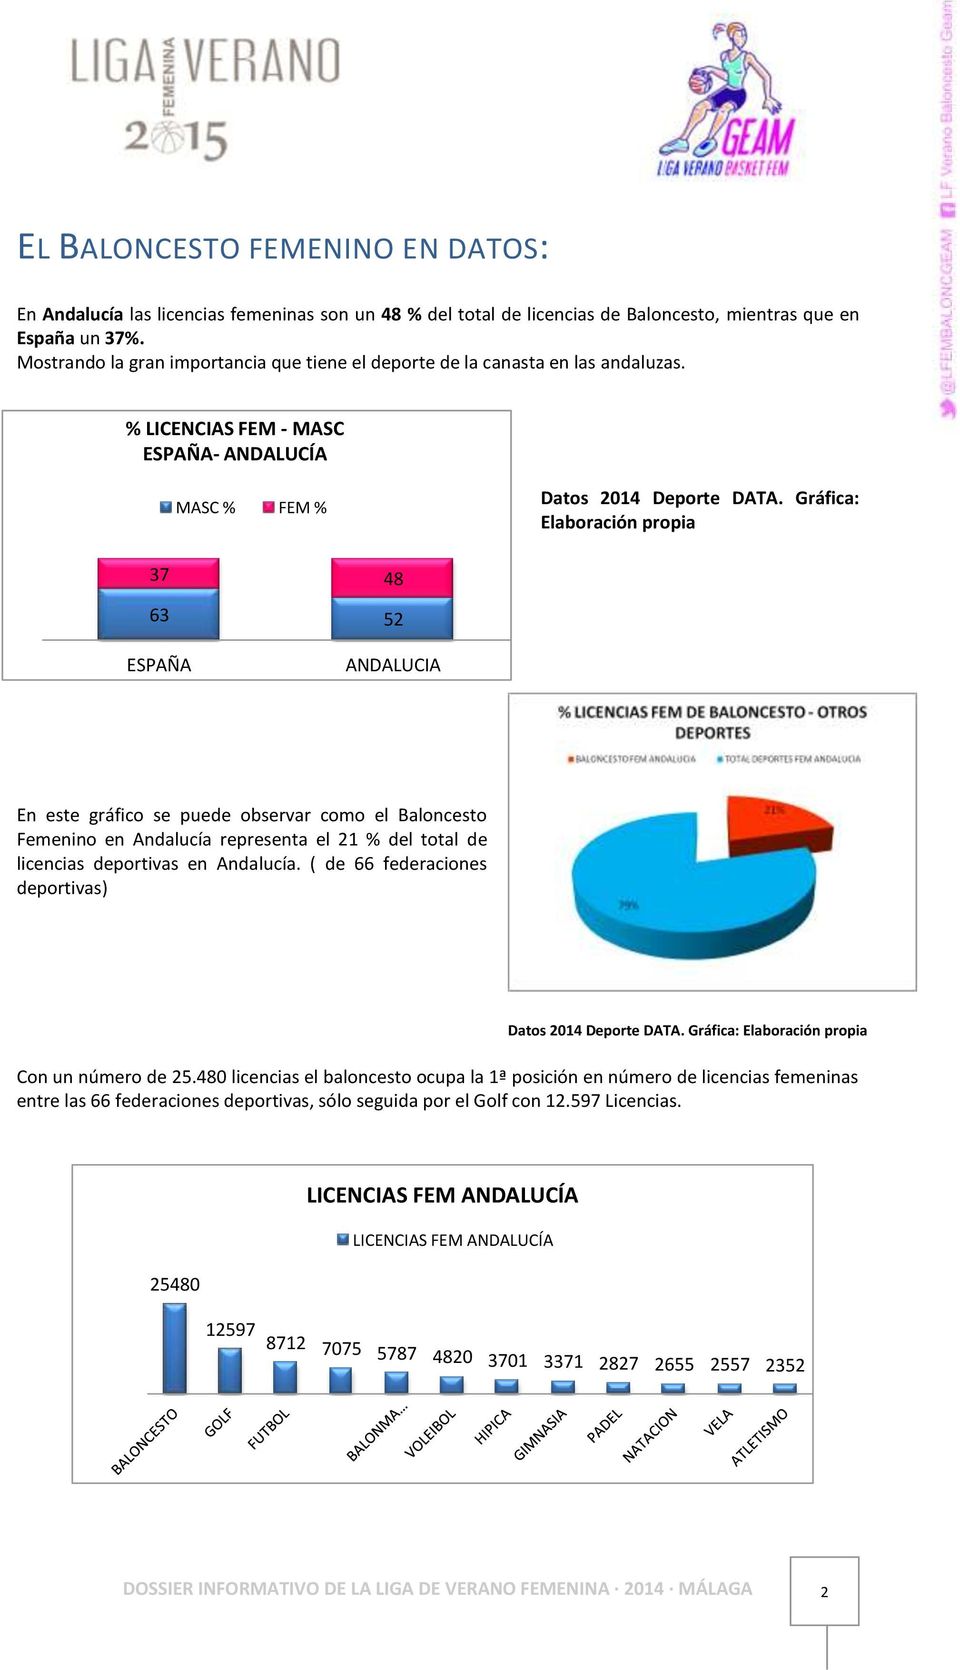 Gráfica: Elaboración propia 37 48 63 52 ESPAÑA ANDALUCIA En este gráfico se puede observar como el Baloncesto Femenino en Andalucía representa el 21 % del total de licencias deportivas en Andalucía.